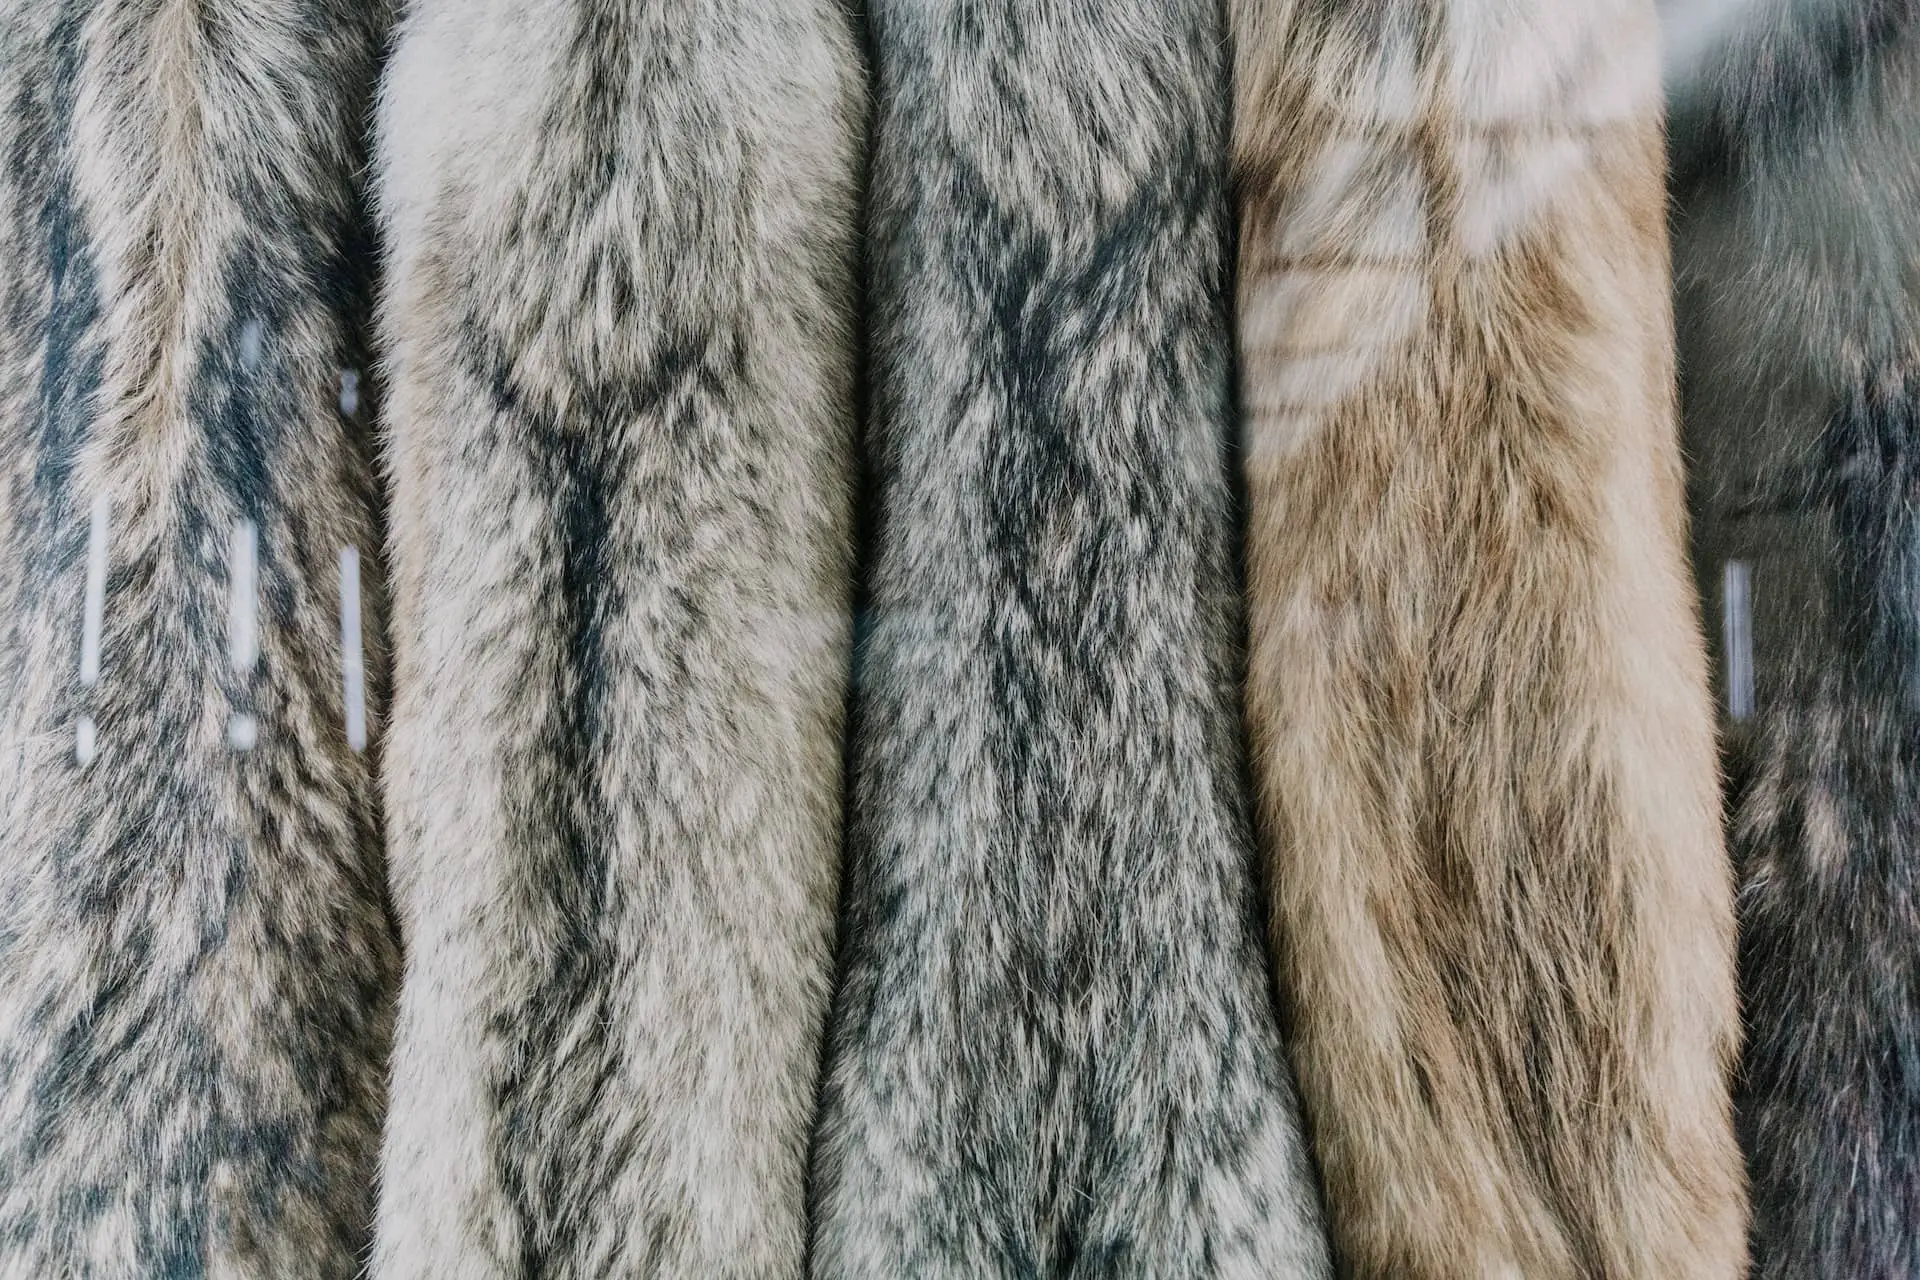 Strips of animal fur